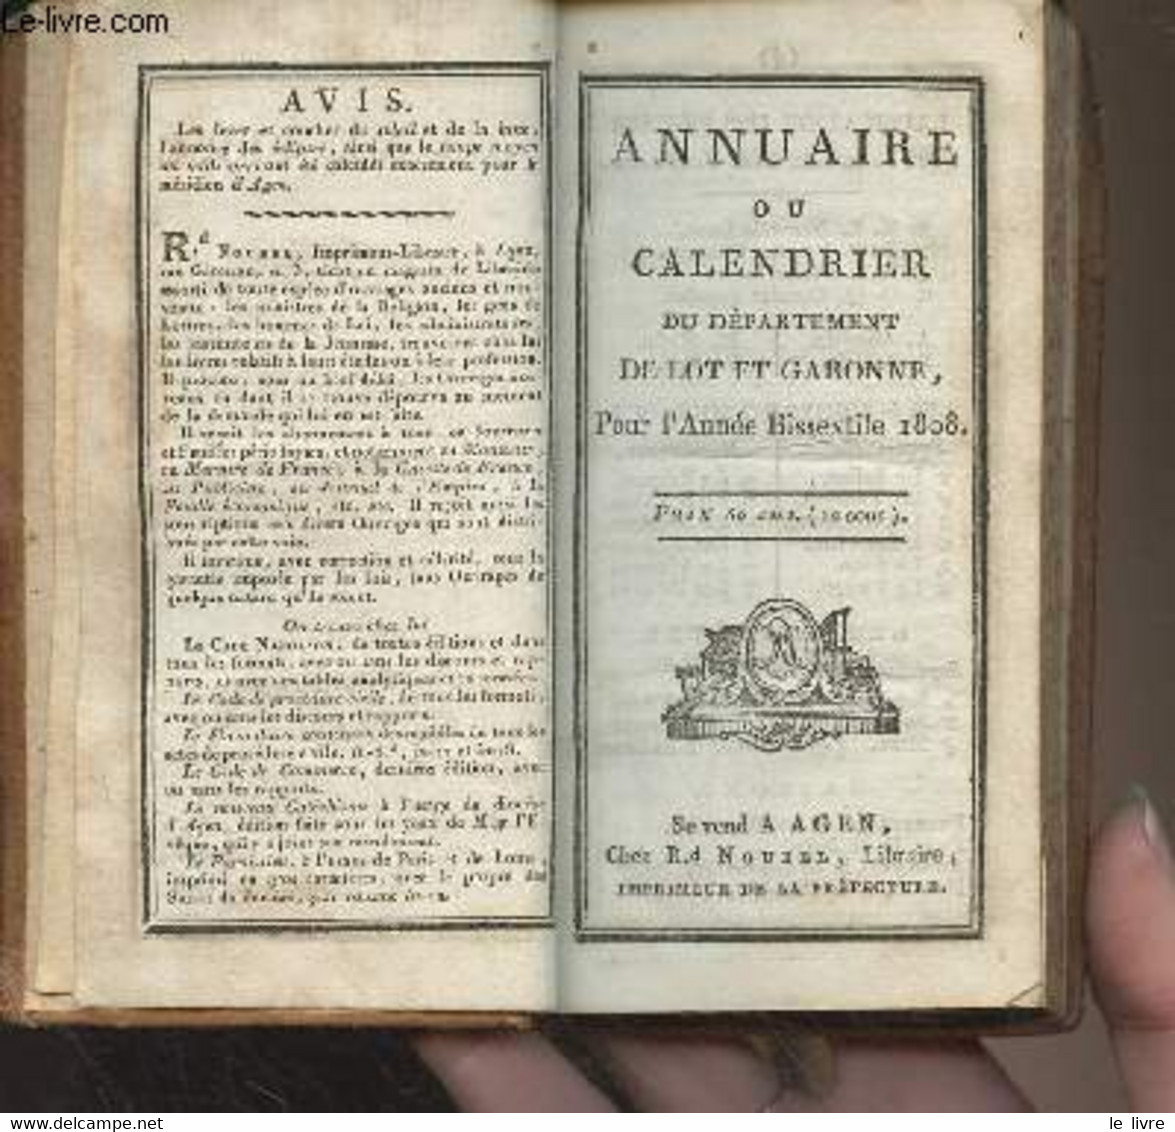 Annuaire Ou Calendrier Du Département De Lot Et Garonne Pour L'année Bissextile 1808 - Collectif - 1808 - Agendas & Calendriers